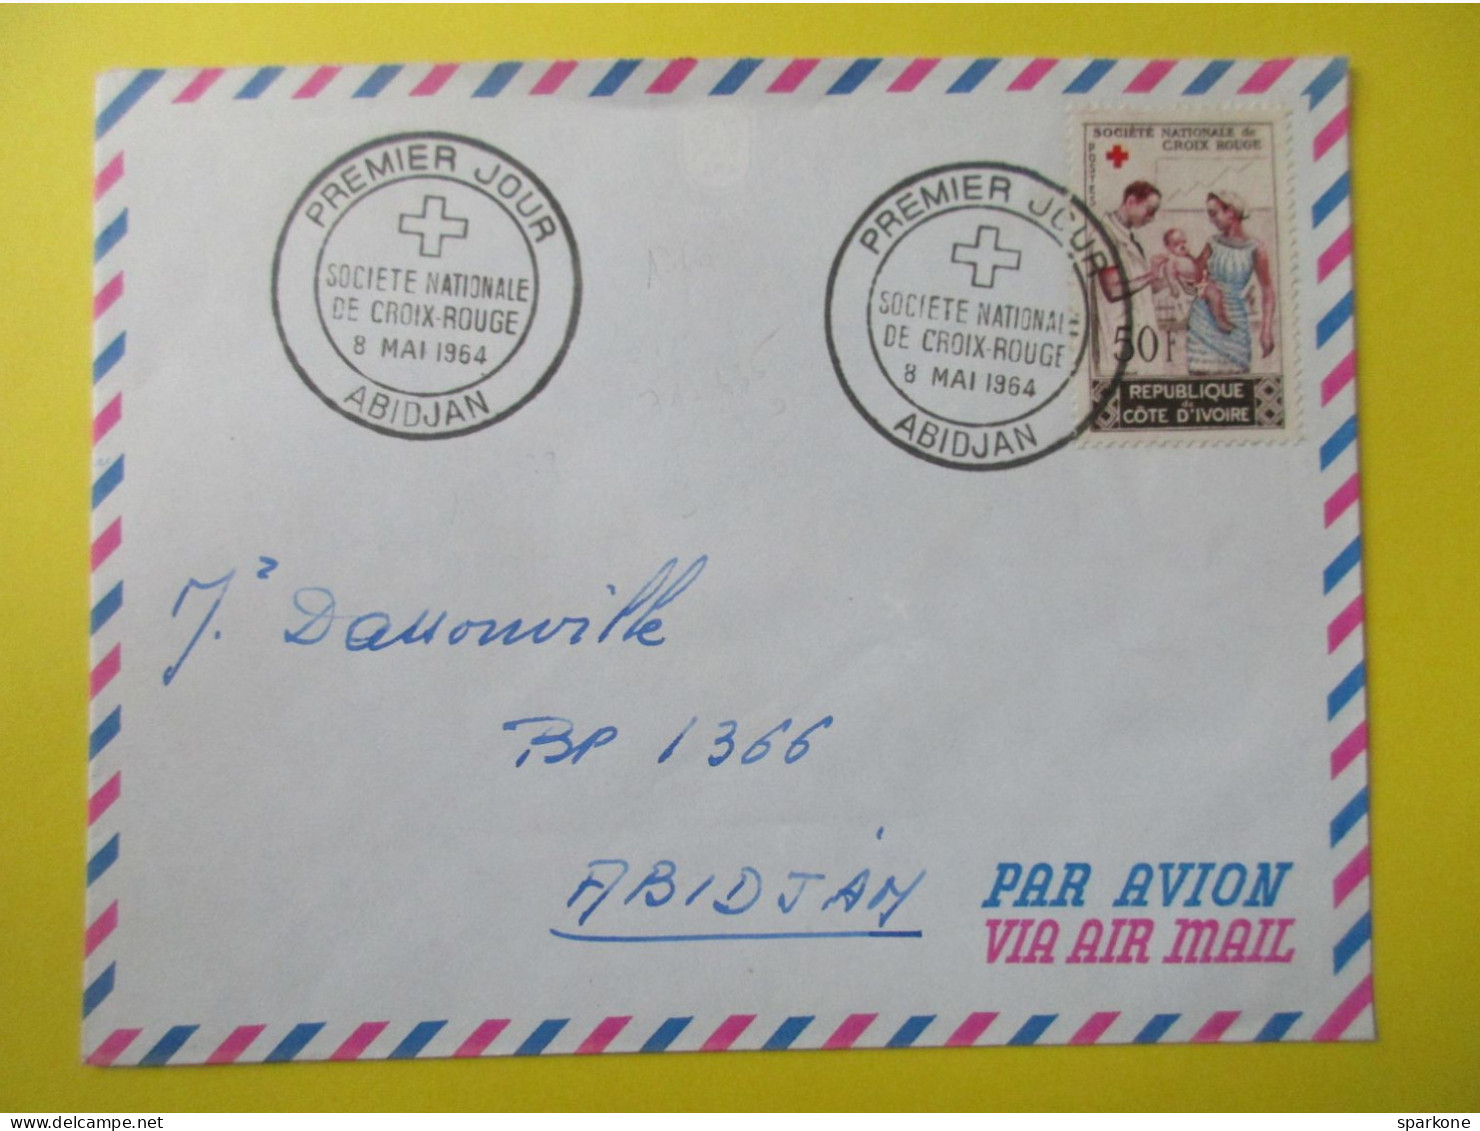 Marcophilie - Enveloppe - République De Côte D'Ivoire - Société Nationale De Croix-Rouge - 1° Jour 1964 - Air Mail - Ivory Coast (1960-...)